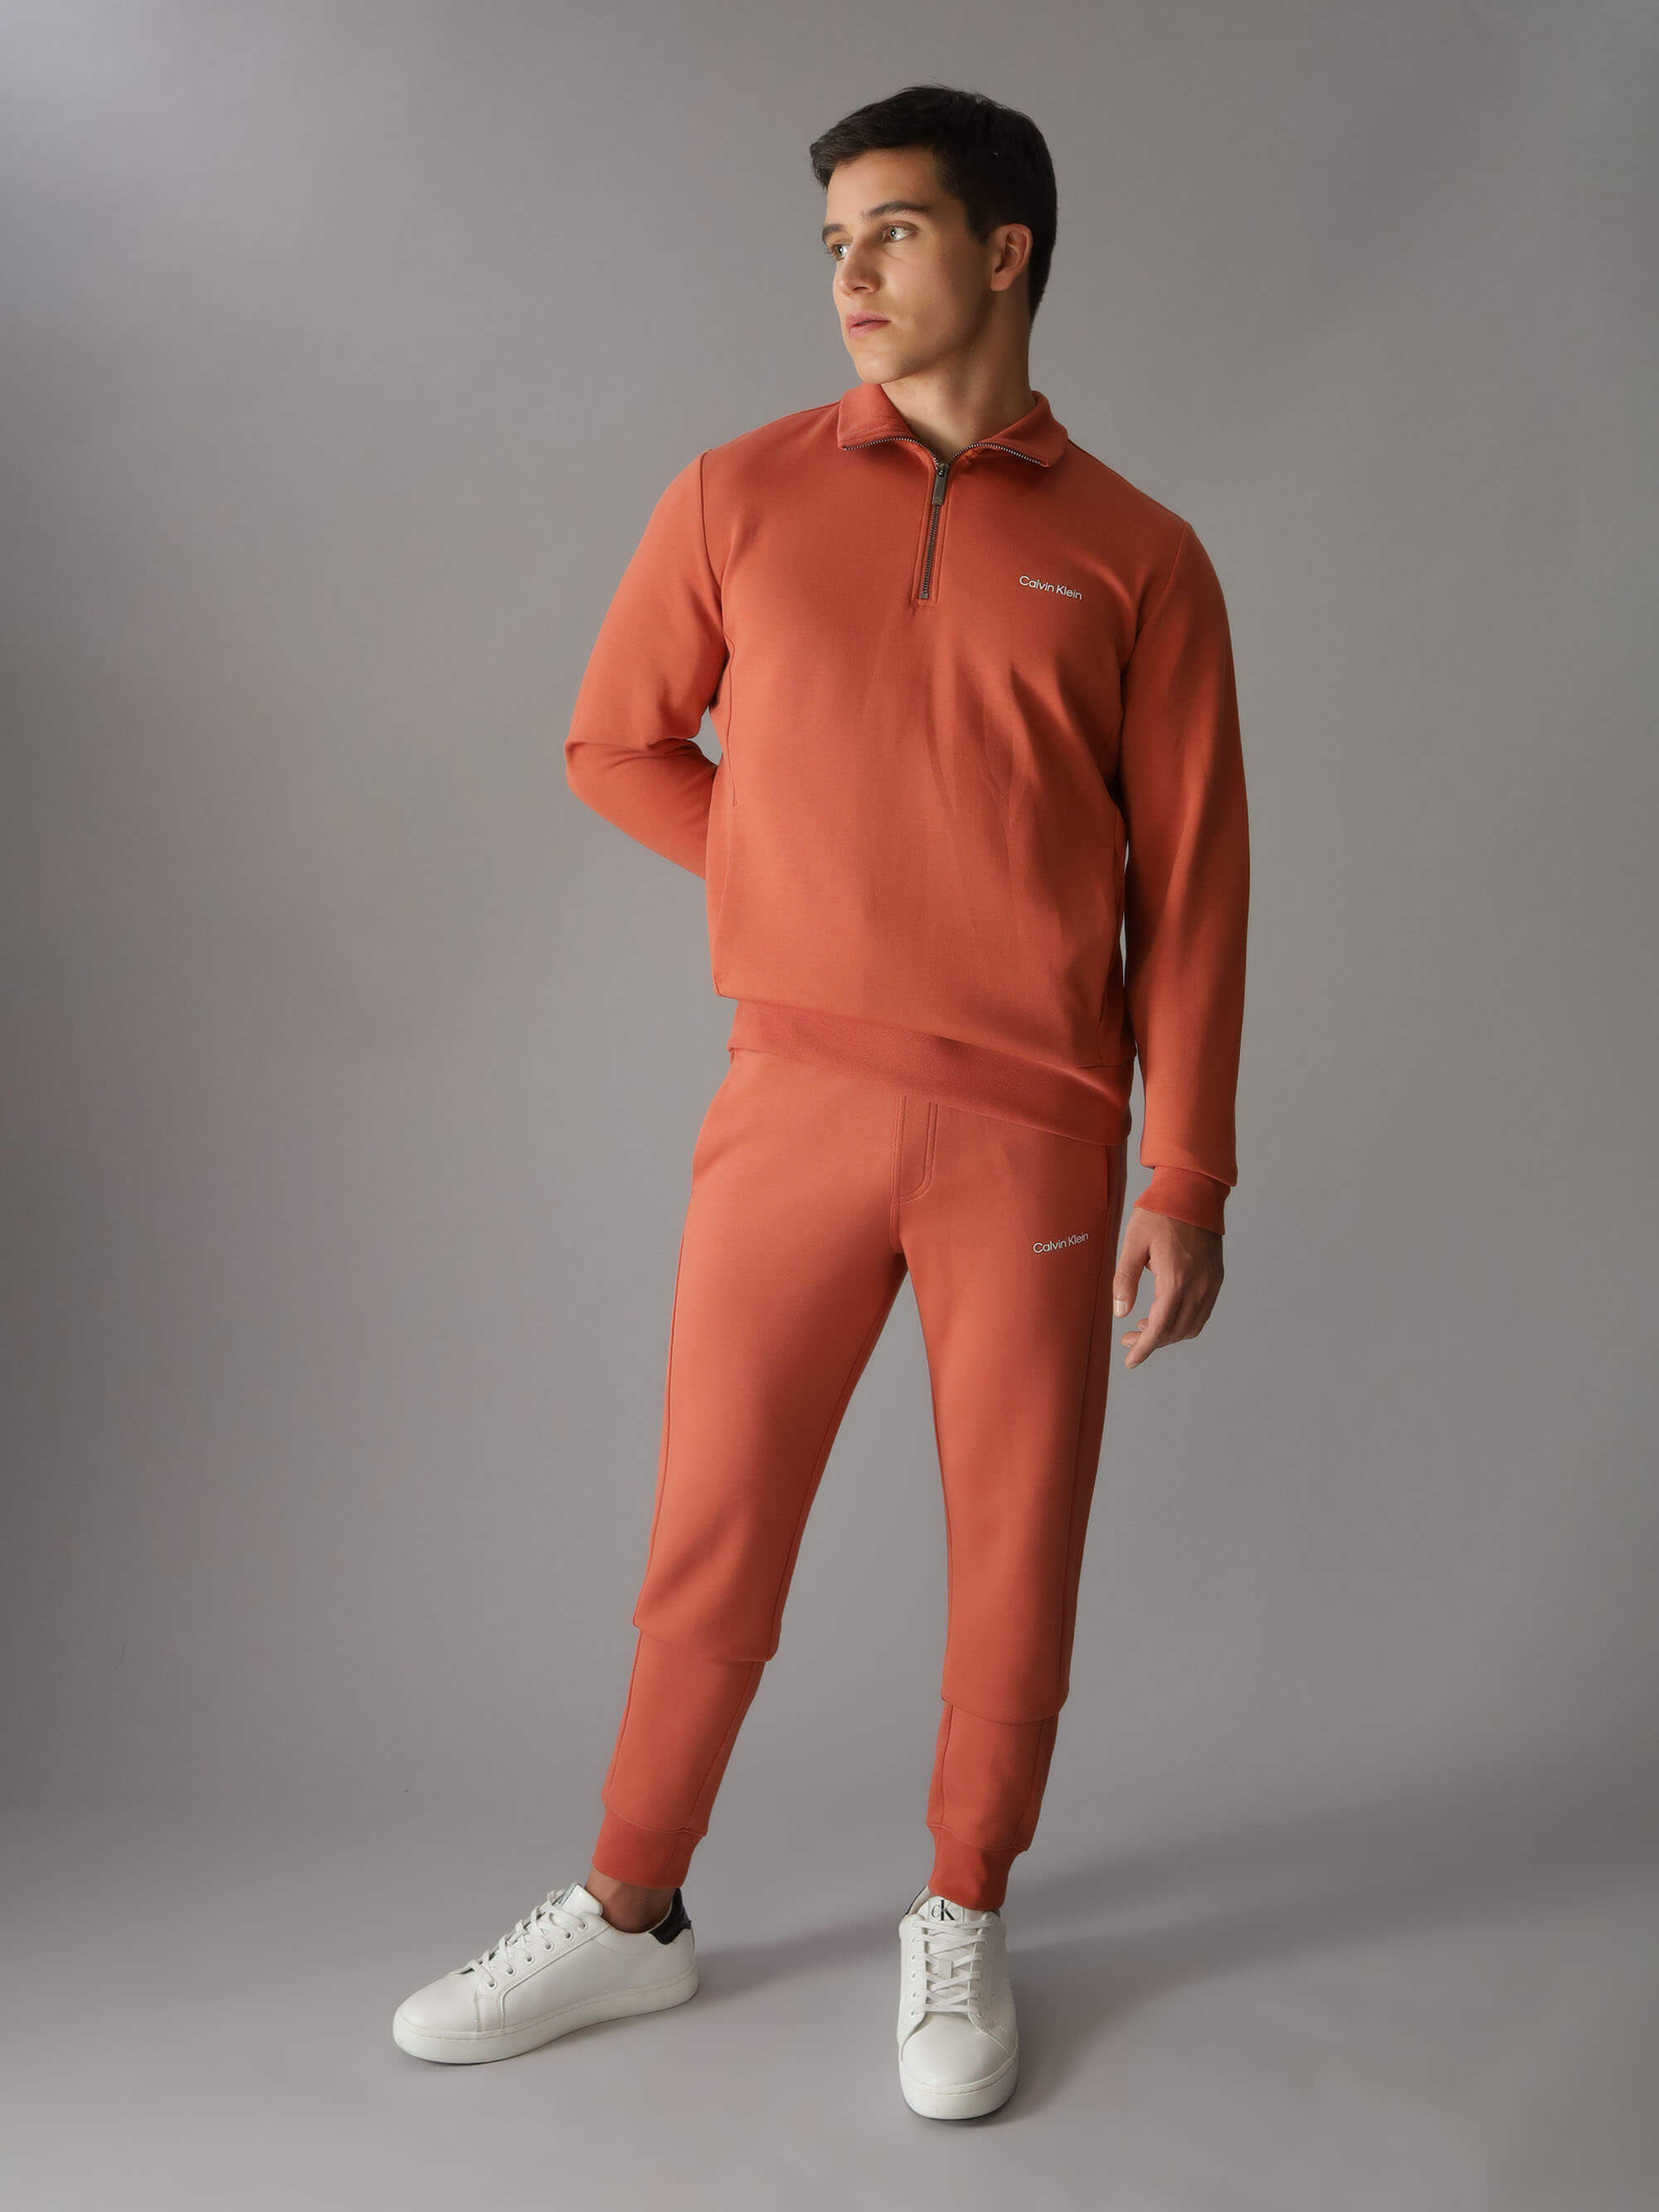 Sudadera Calvin Klein Logo Hombre Naranja